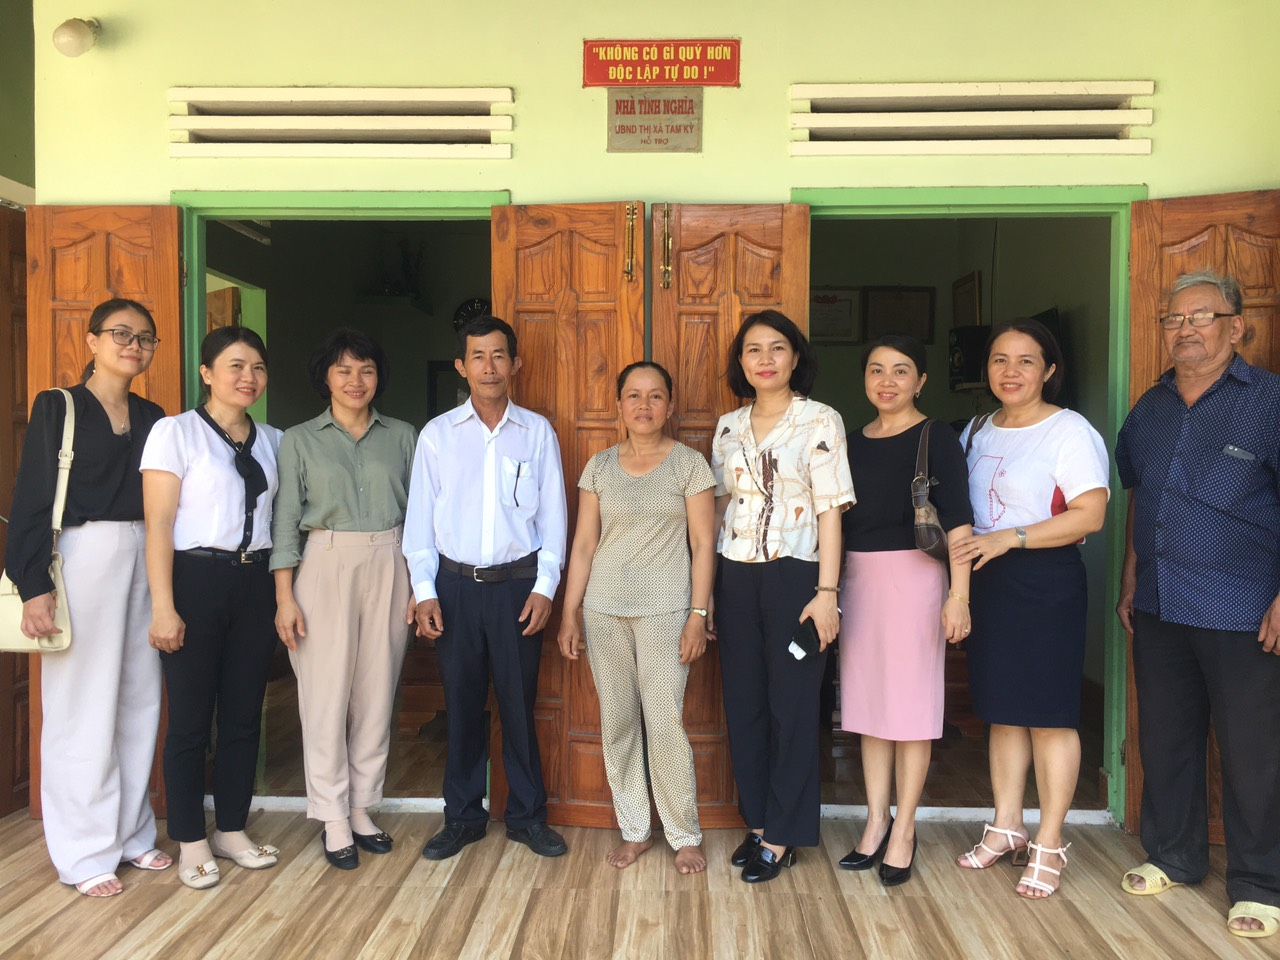 Sở Ngoại vụ tổ chức nhận phụng dưỡng Mẹ Việt Nam anh hùng